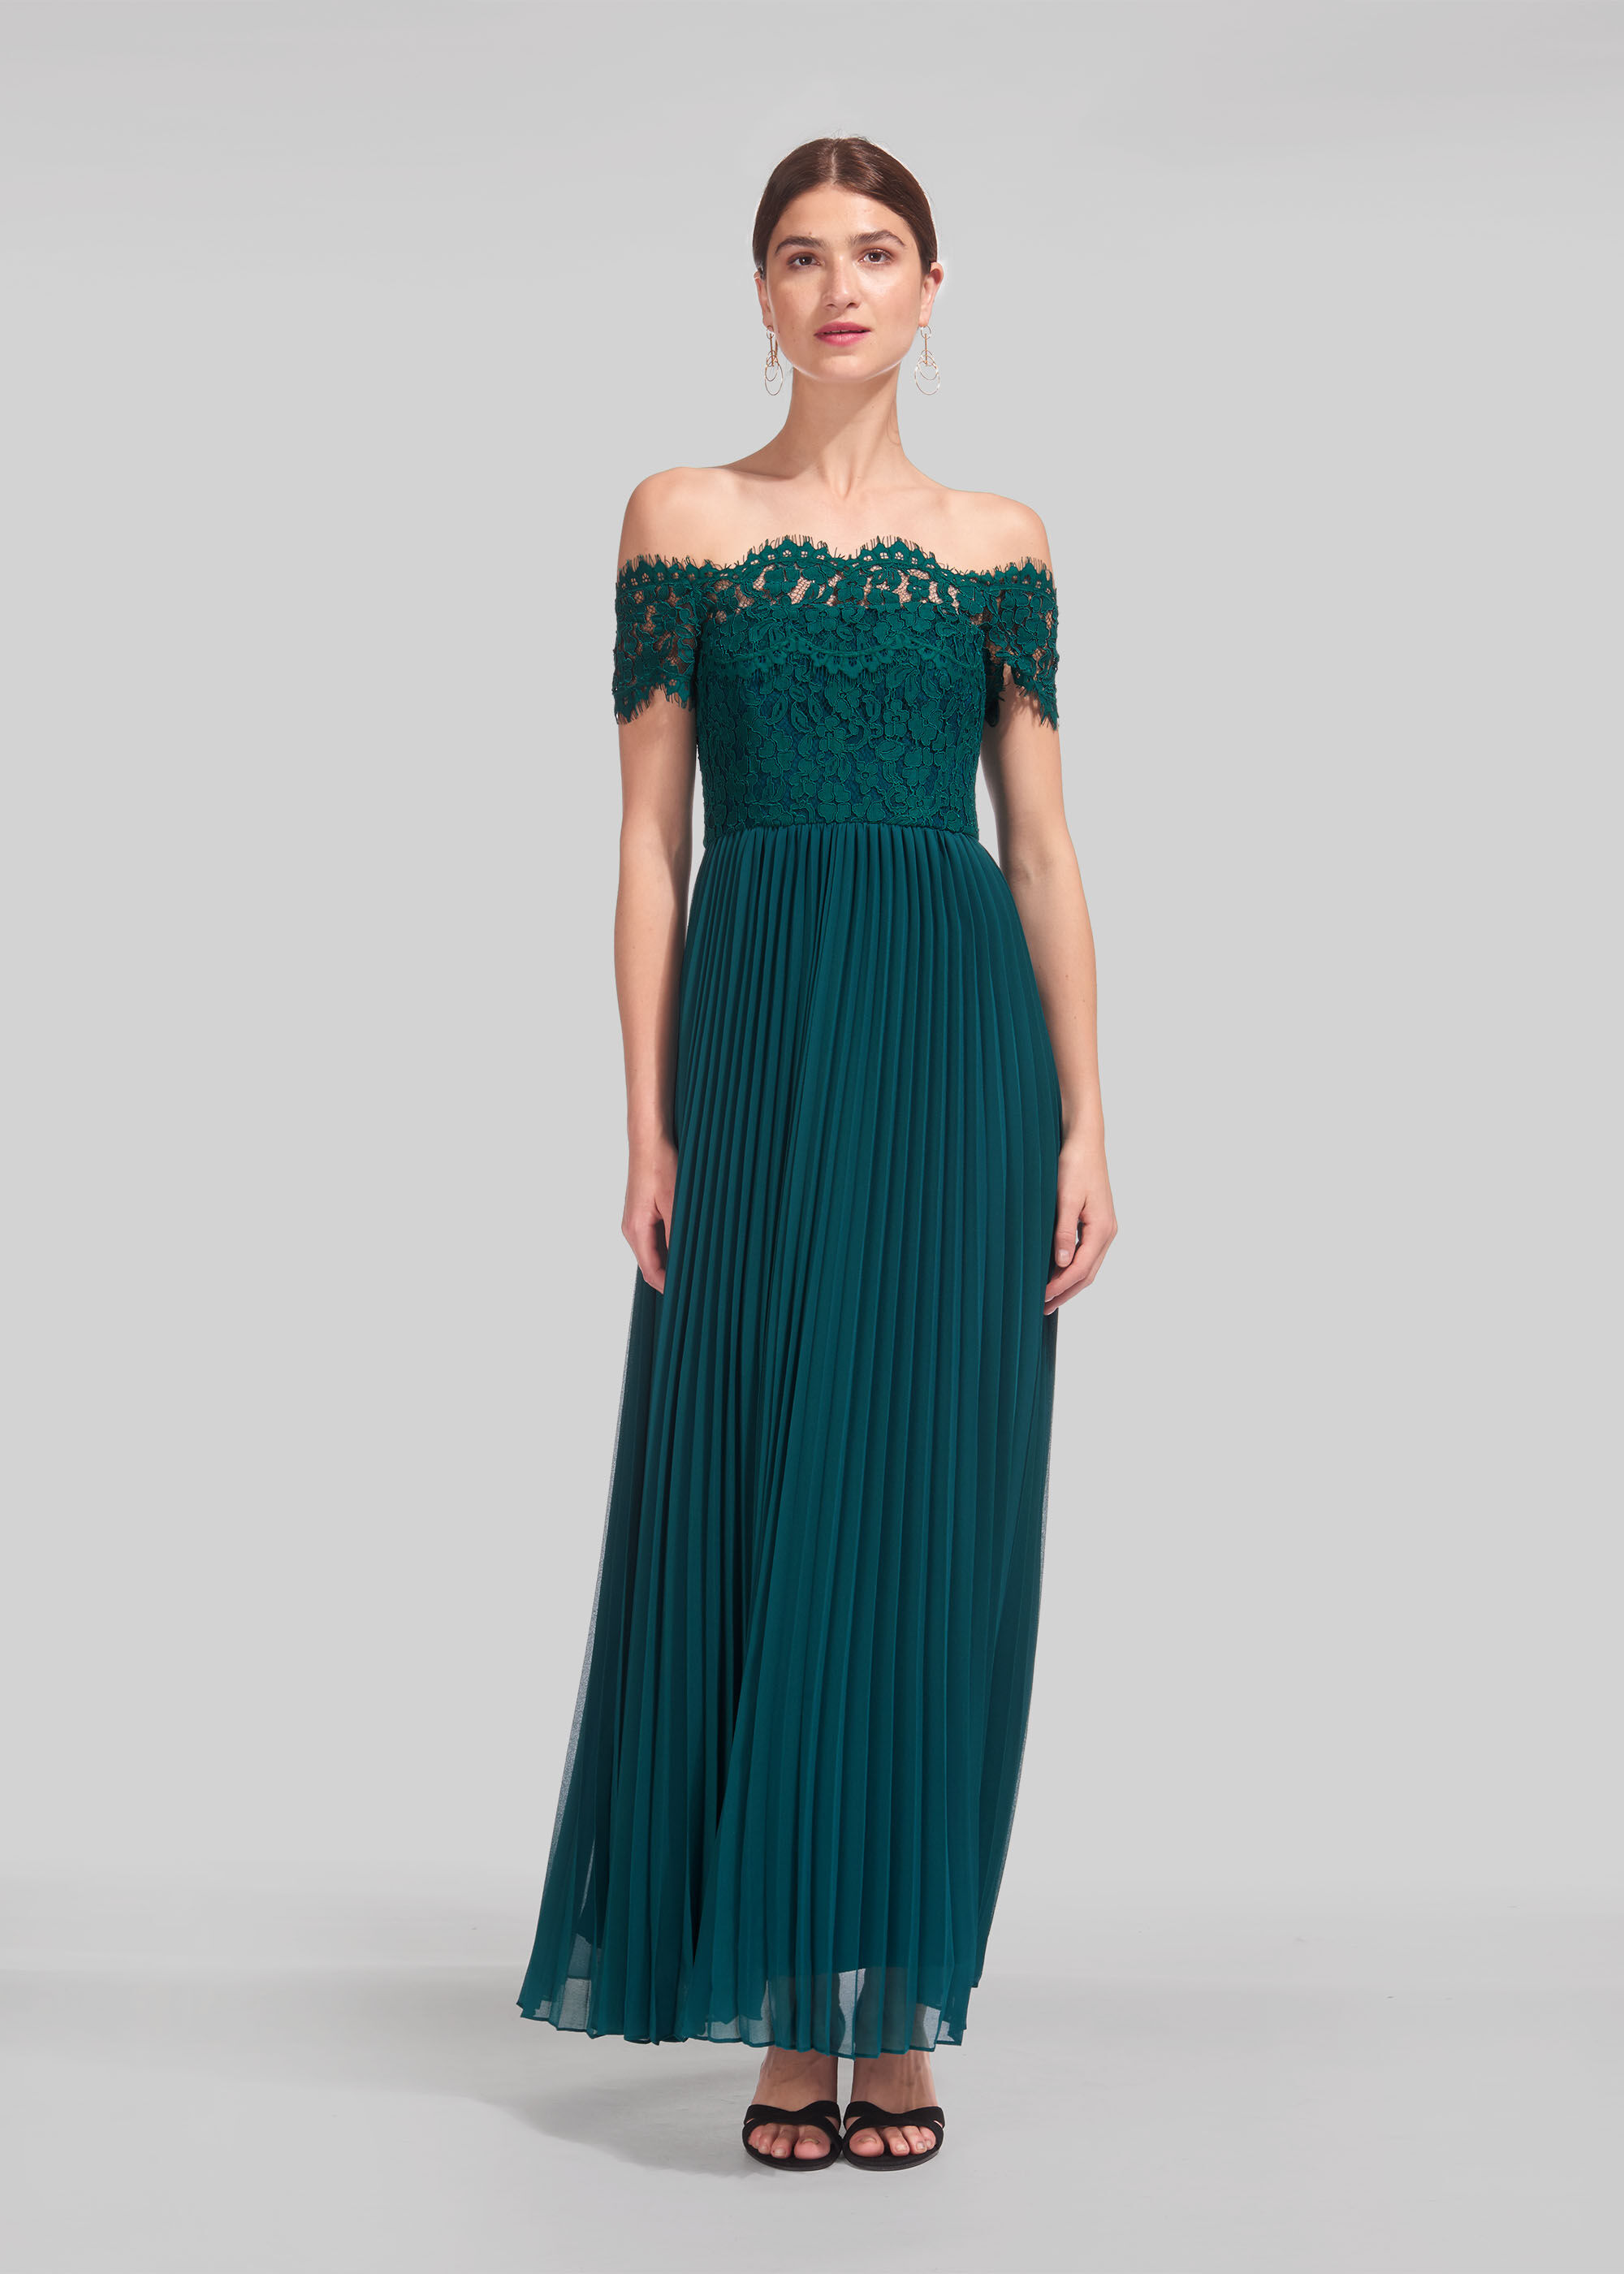 Green Bardot Lace Pleat Maxi Dress ...